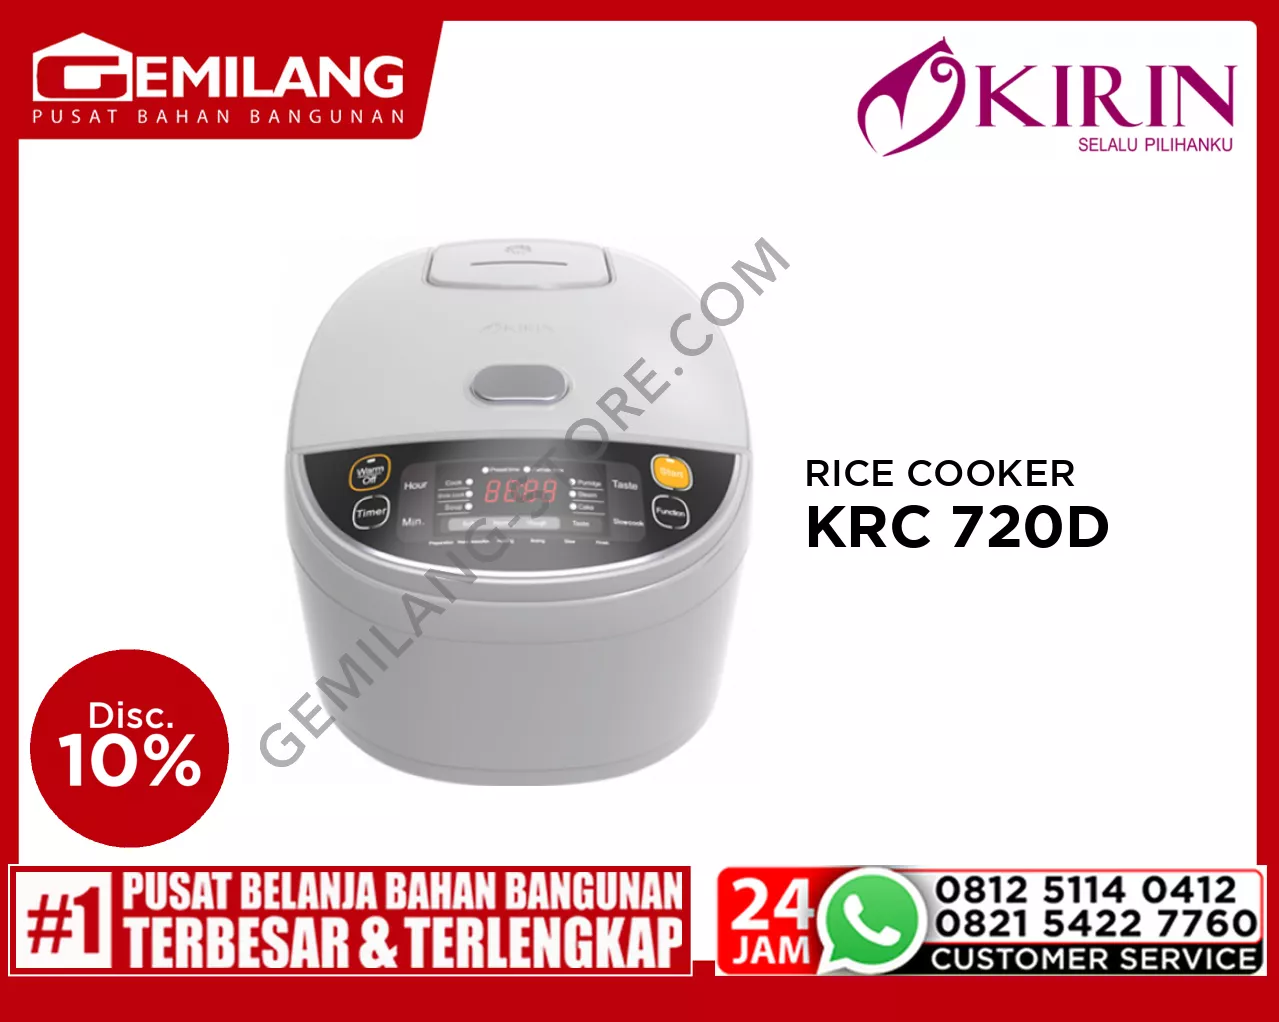 KIRIN RICE COOKER 2ltr KRC 720D